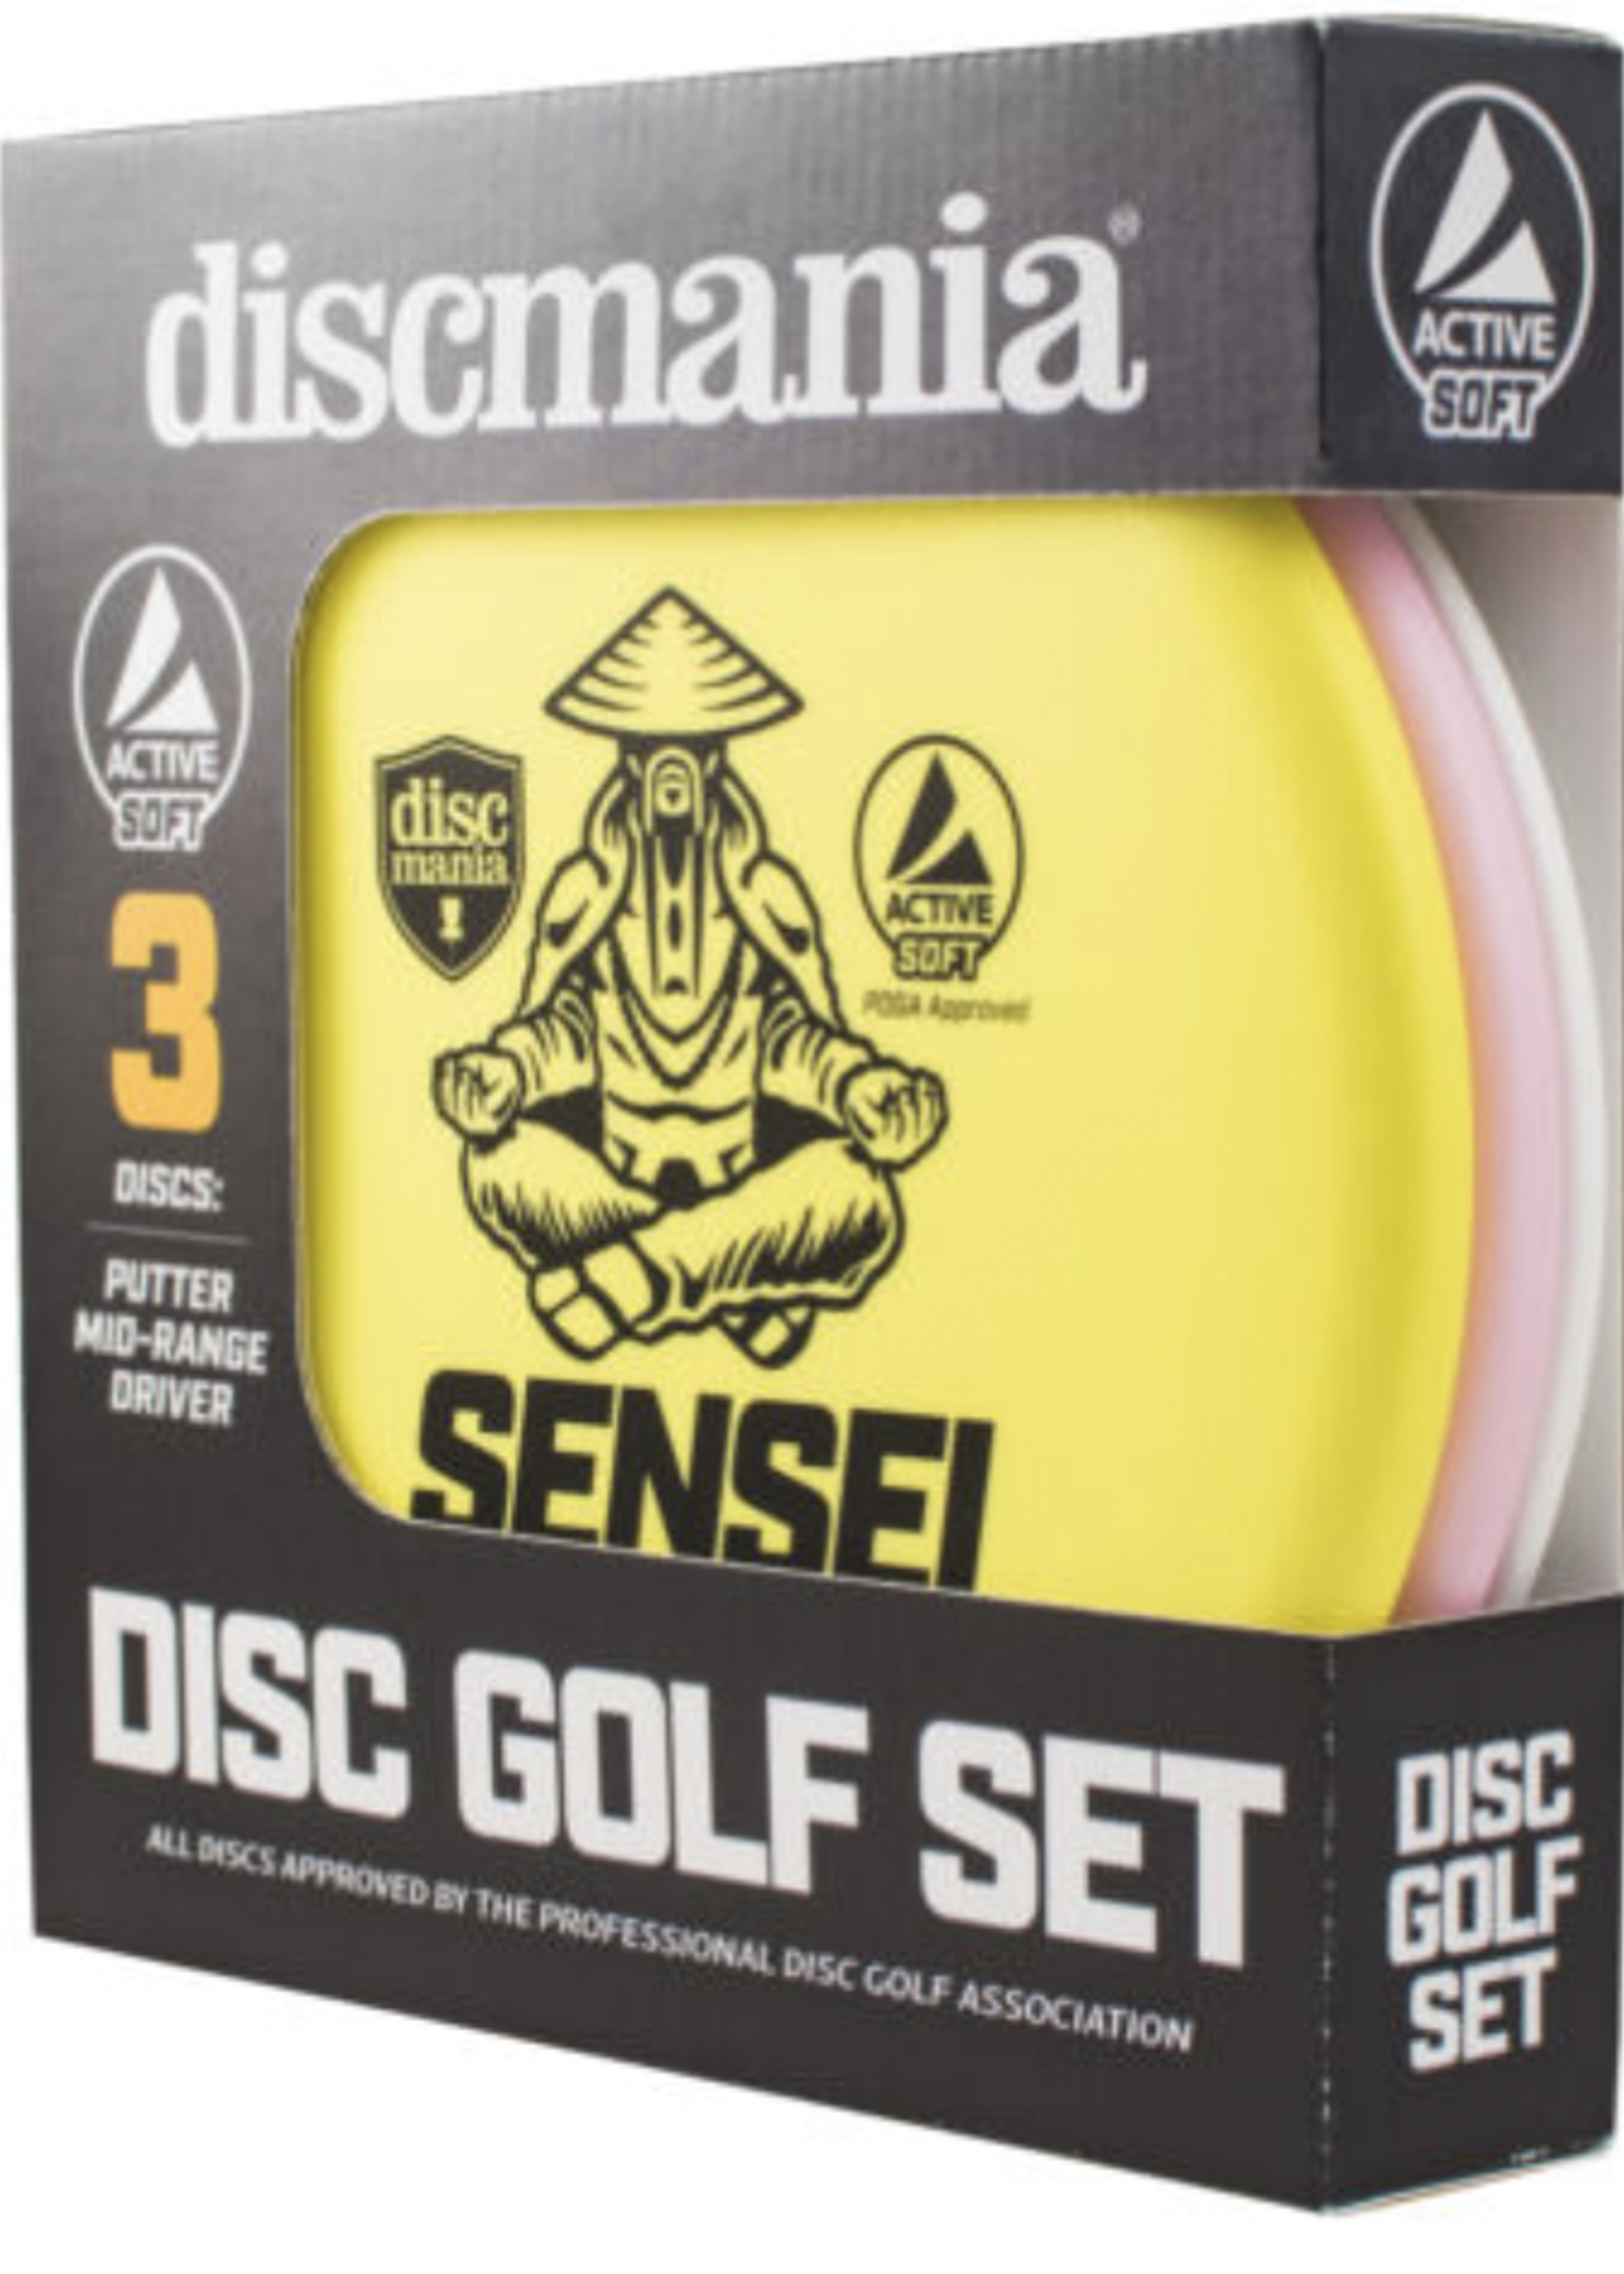 Discmania Discmania Active Soft 3 Disc Set 150-159g